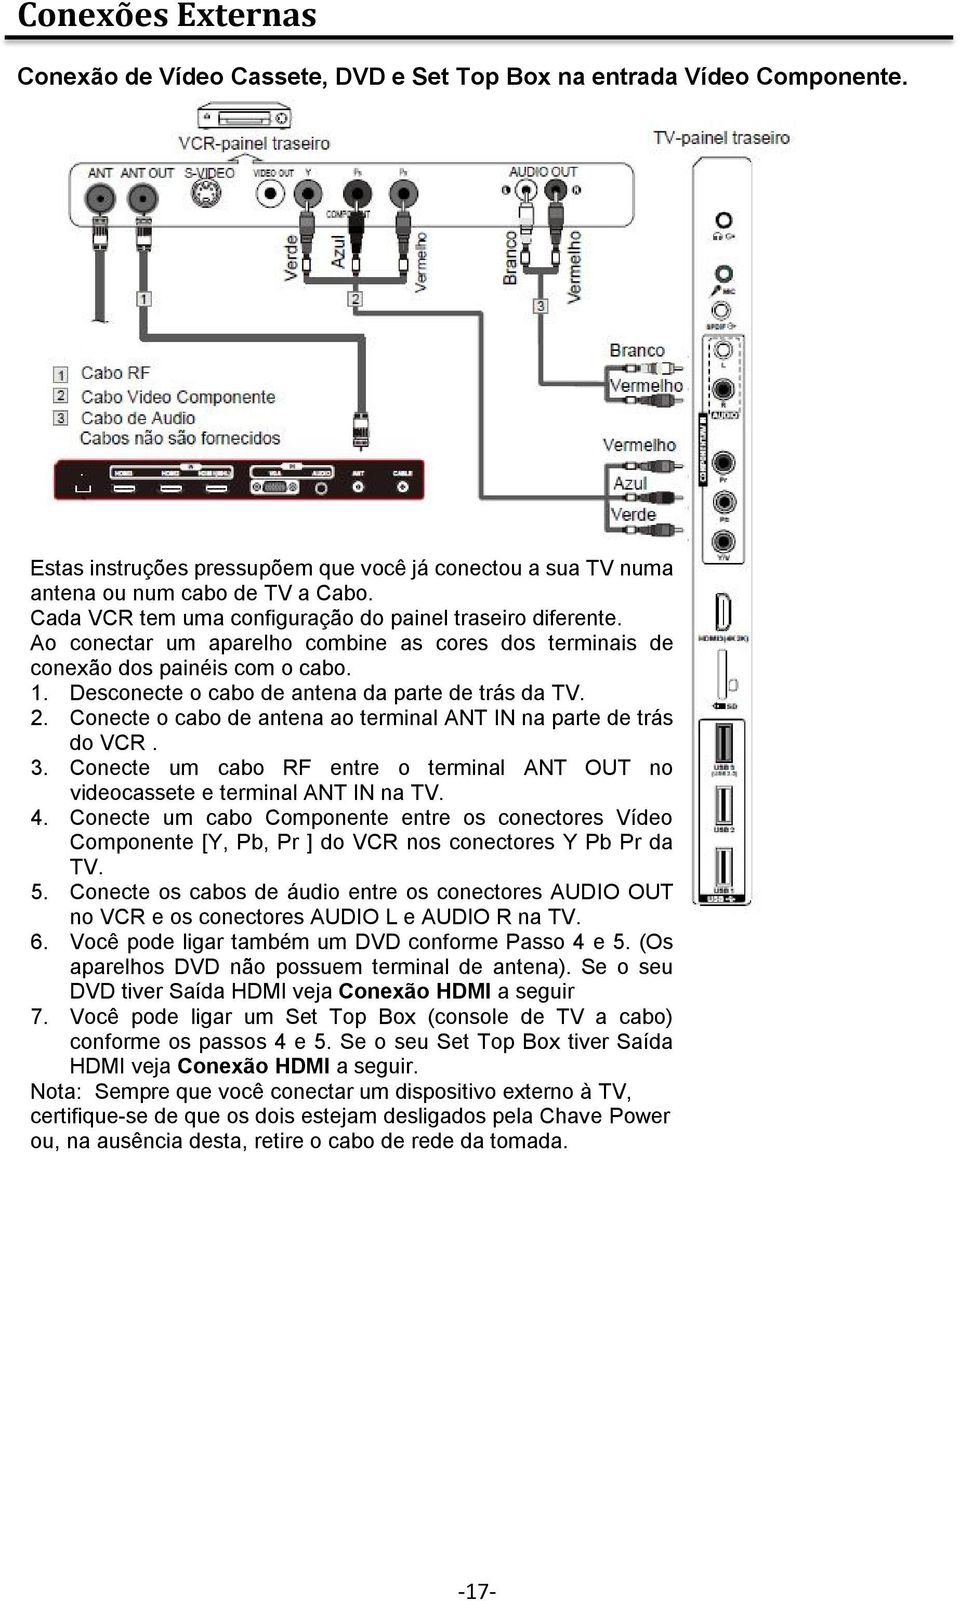 Desconecte o cabo de antena da parte de trás da TV. 2. Conecte o cabo de antena ao terminal ANT IN na parte de trás do VCR. 3.